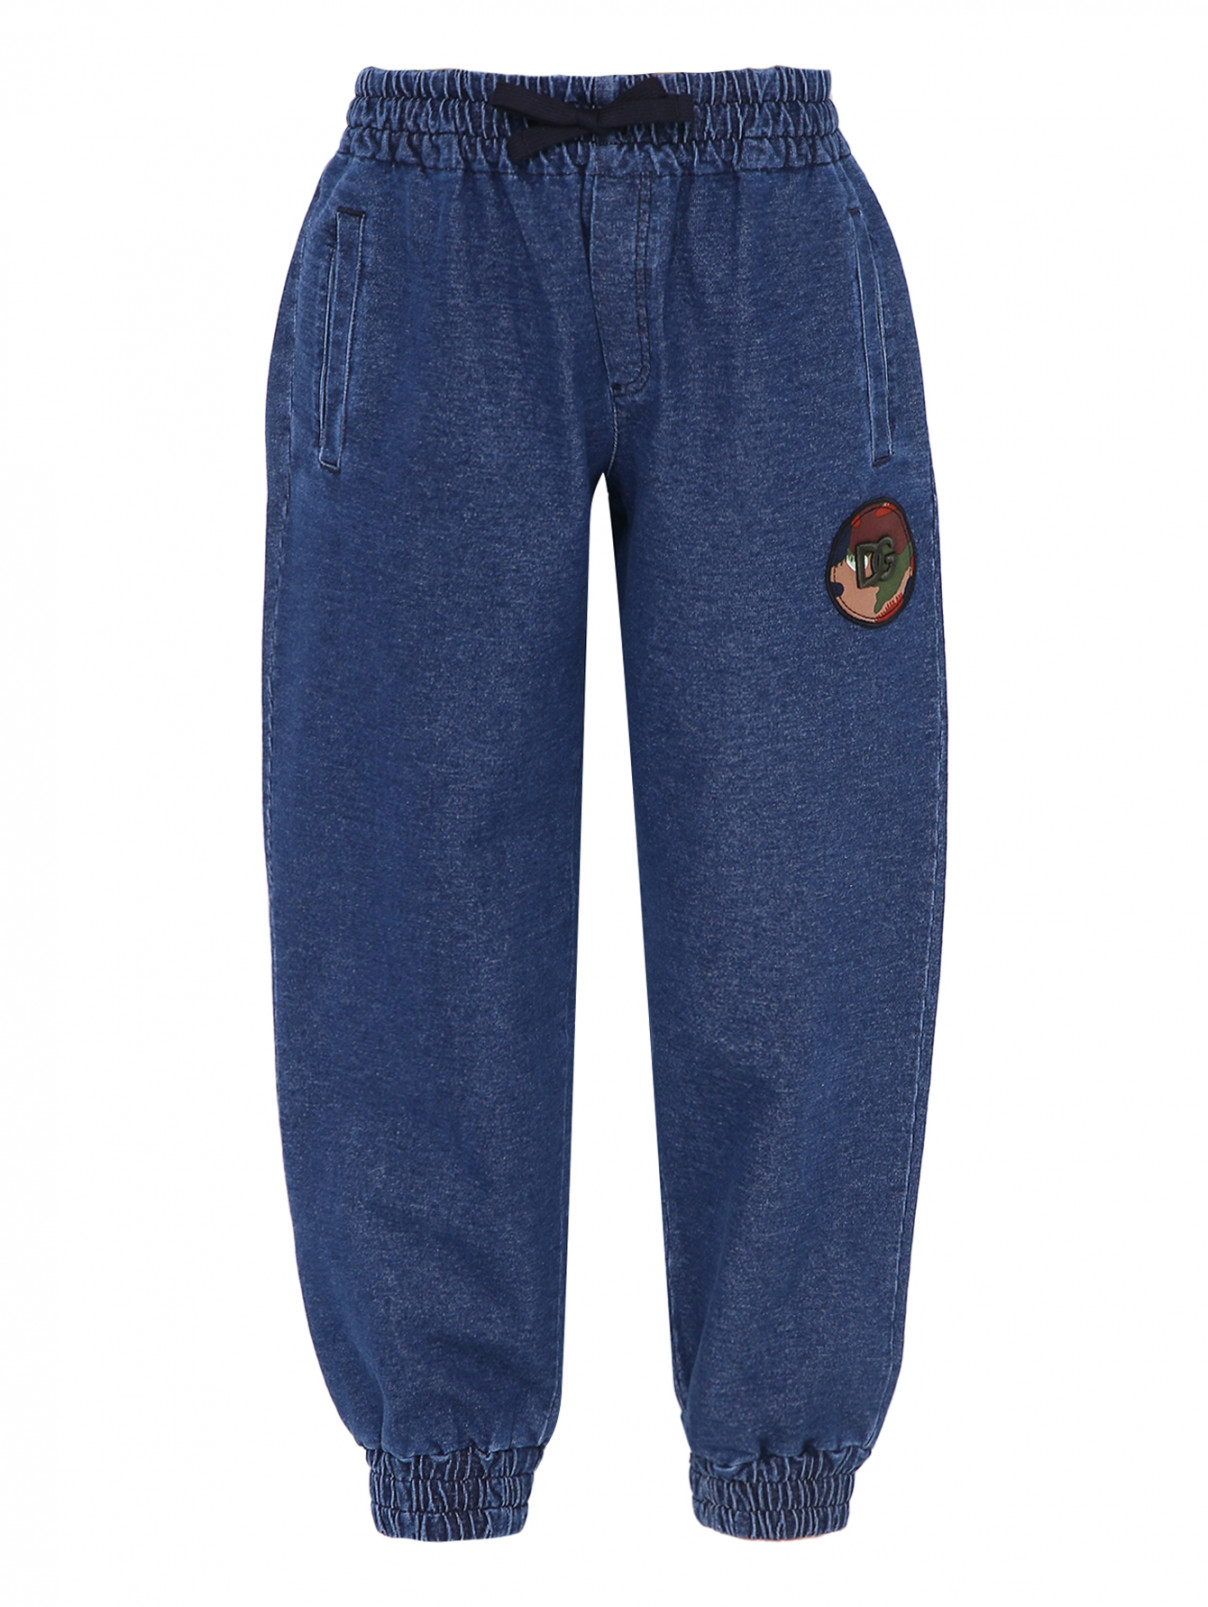 Джинсовые брюки на резинке Dolce & Gabbana  –  Общий вид  – Цвет:  Синий